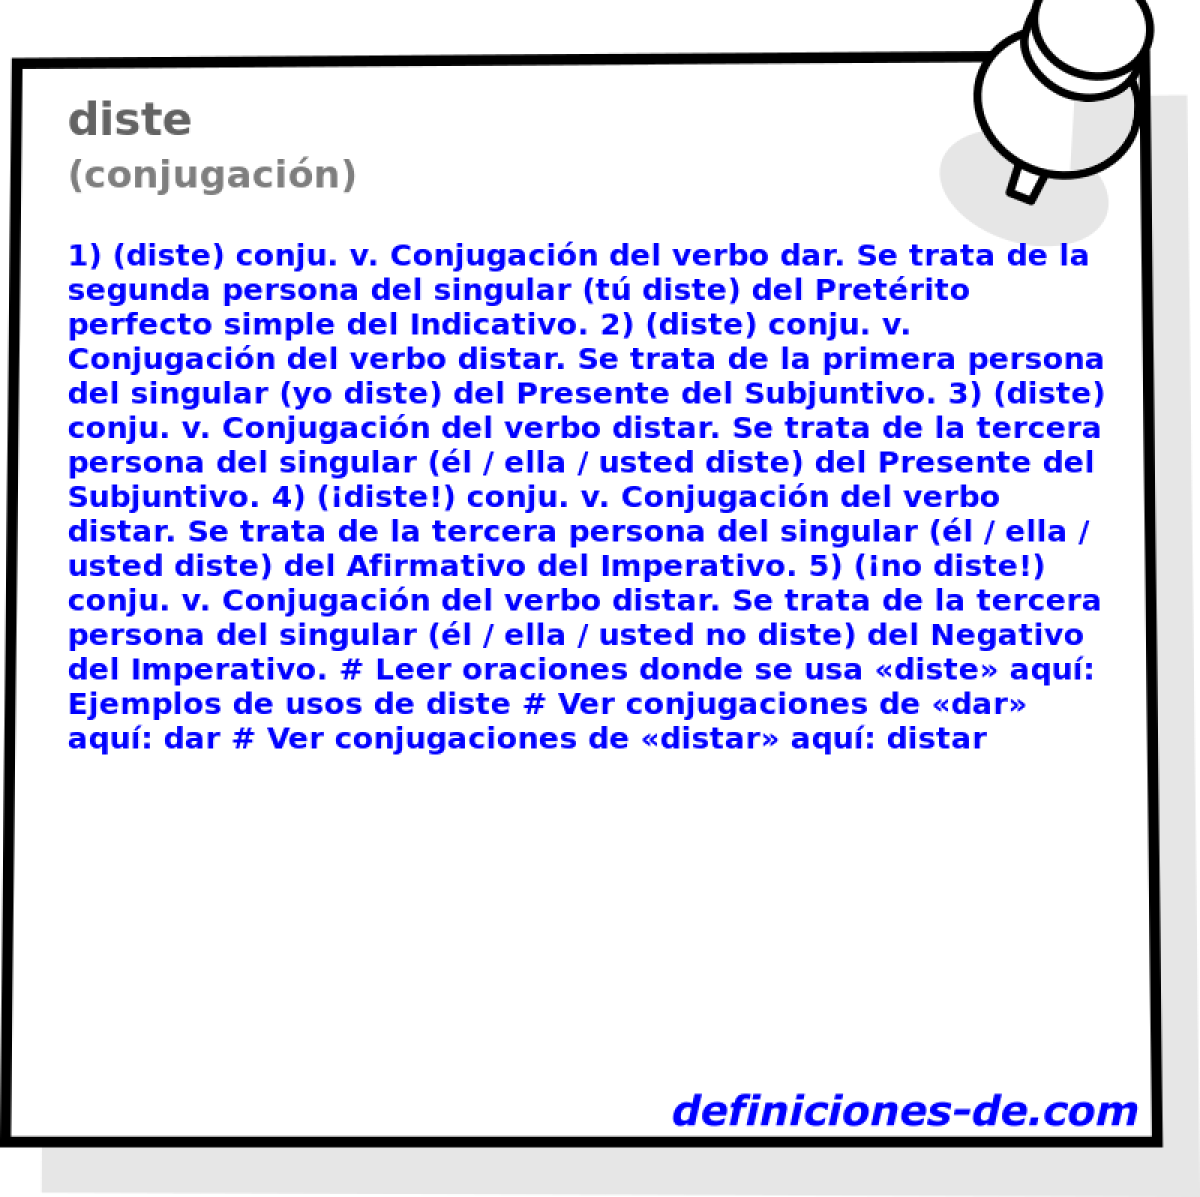 diste (conjugacin)